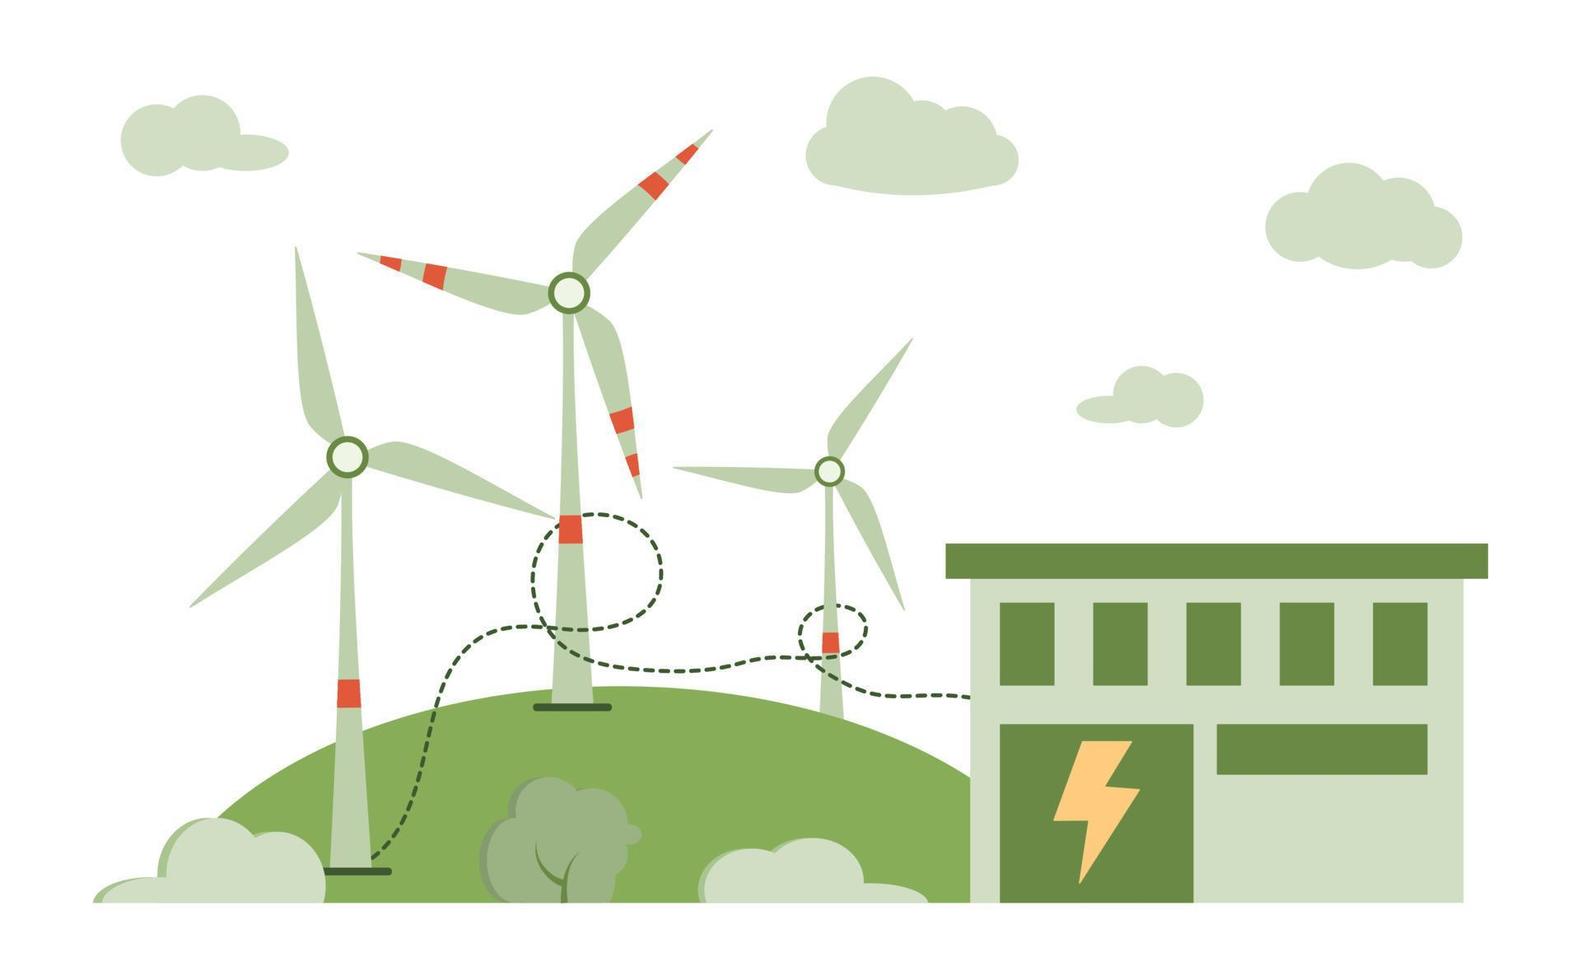 viento poder planta y fábrica. viento turbinas verde energía industrial concepto. vector ilustración en plano estilo de limpiar eléctrico energía desde renovable viento fuentes.